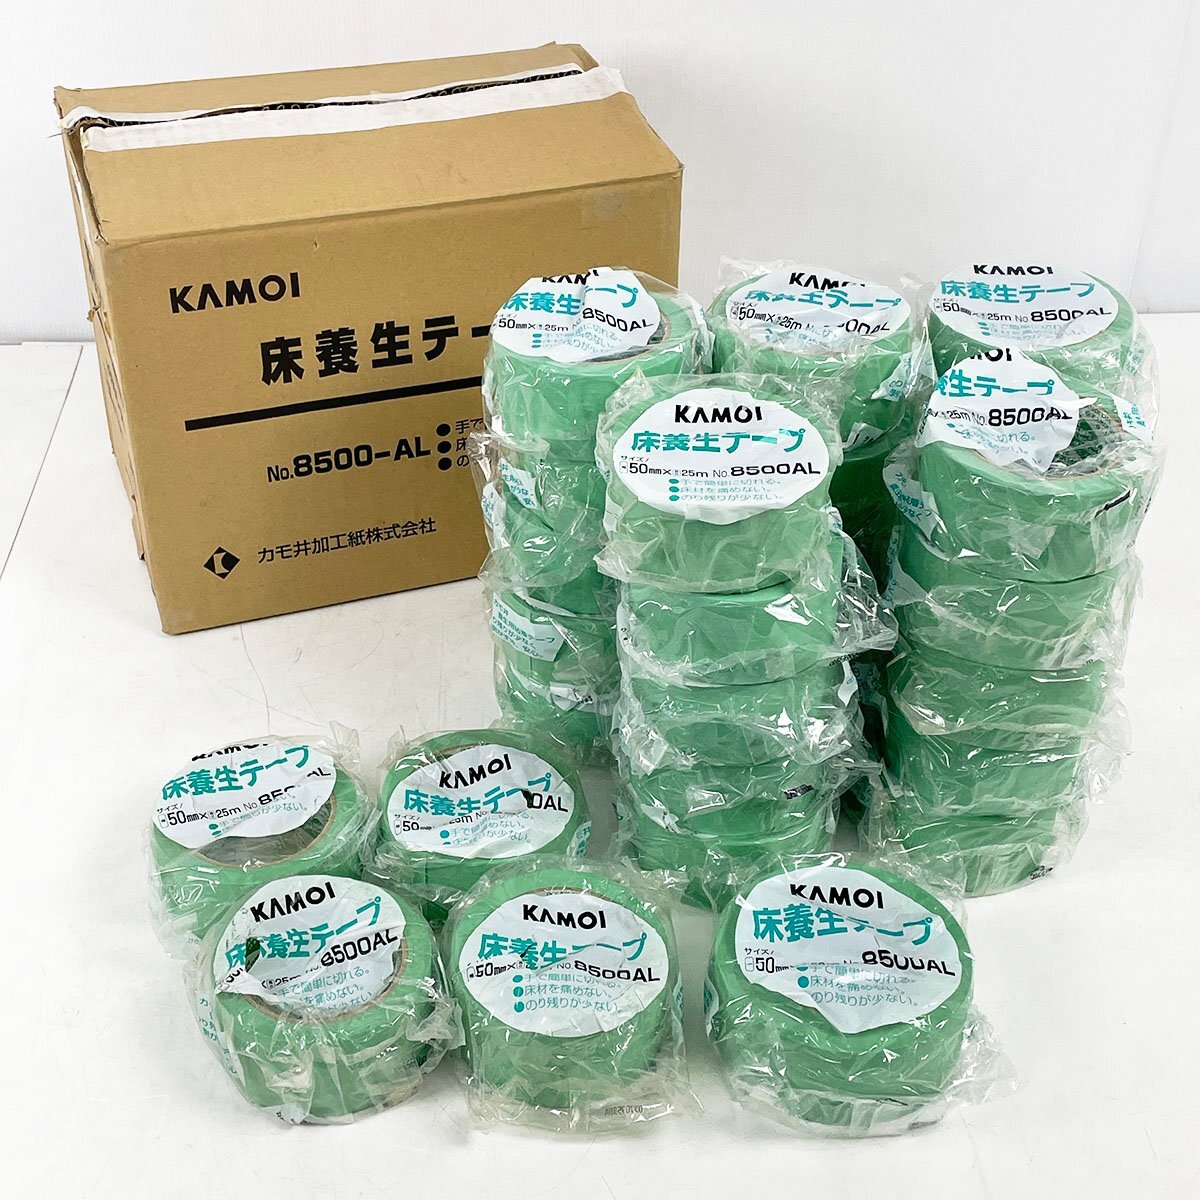 未使用品 KAMOI カモイ 床養生テープ 8500-AL 計30巻セット 50mm×25m 29巻/50ｍ 1巻 養生用粘着テープ [R13139]の画像1